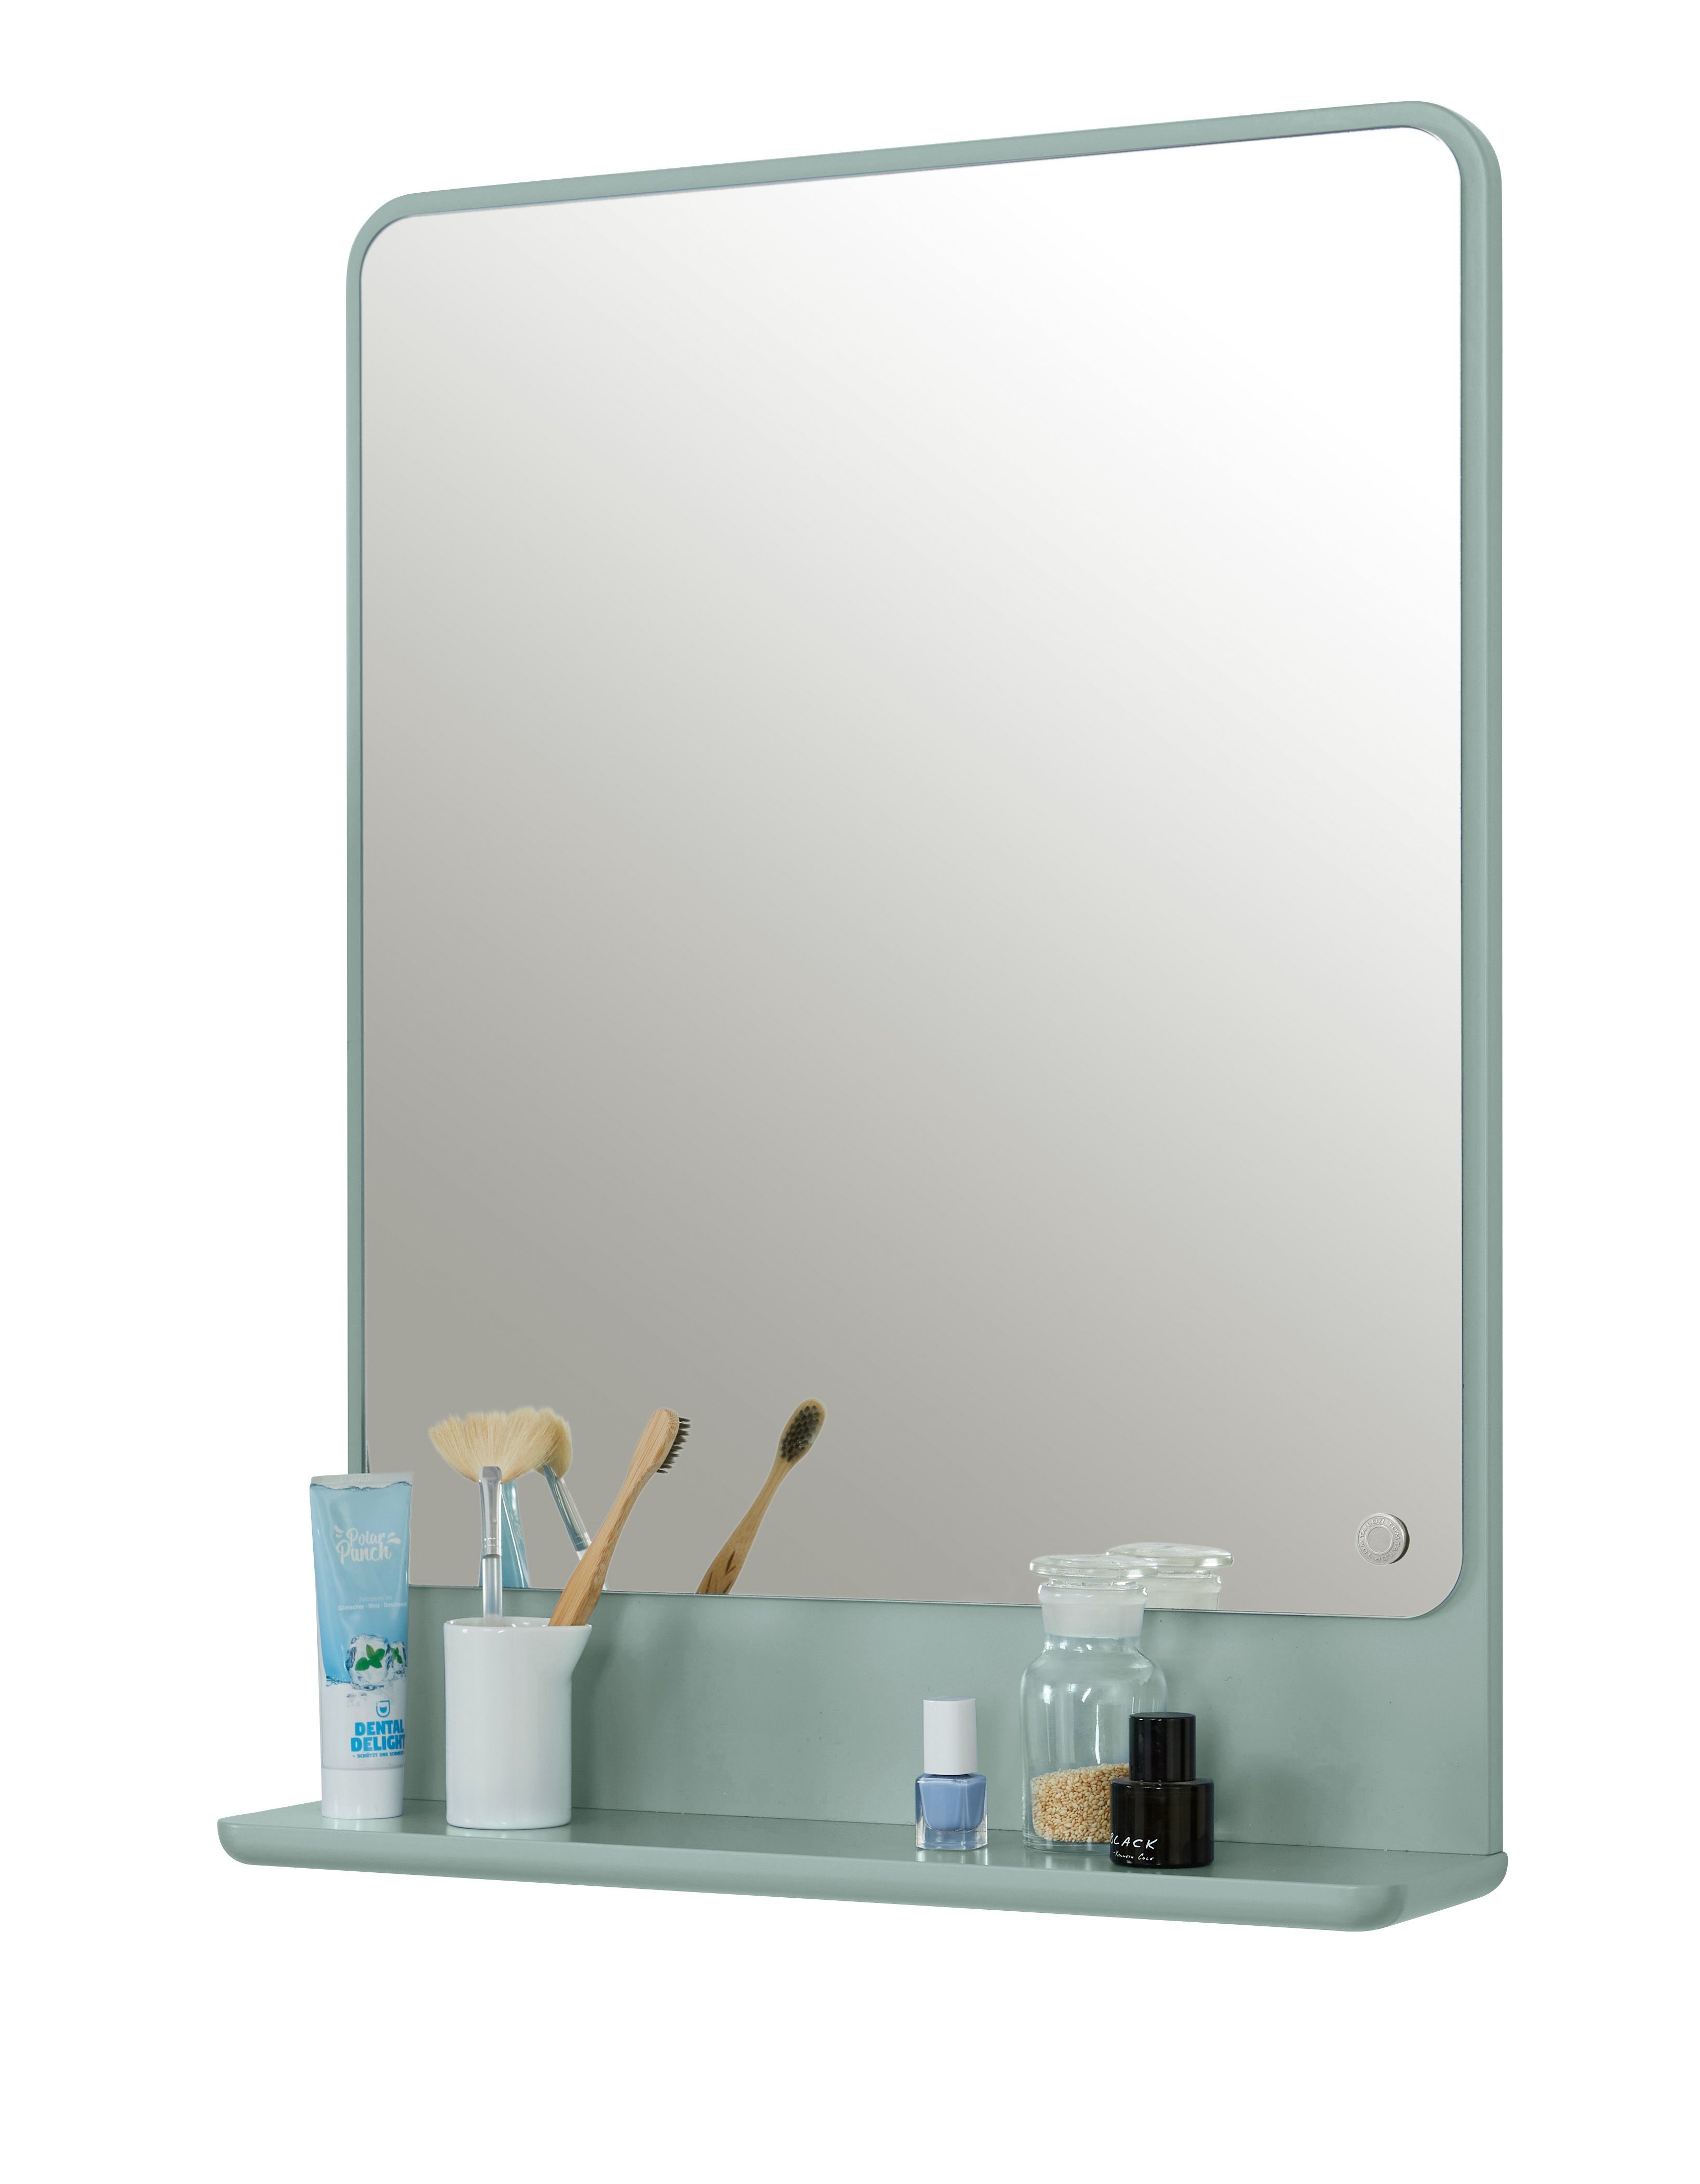 TOM TAILOR HOME Badspiegel COLOR BATH Spiegelelement - in vielen schönen Farben - 70 x 52 x 13 cm, hochwertig lackiertes MDF, gerundete Kanten sage076